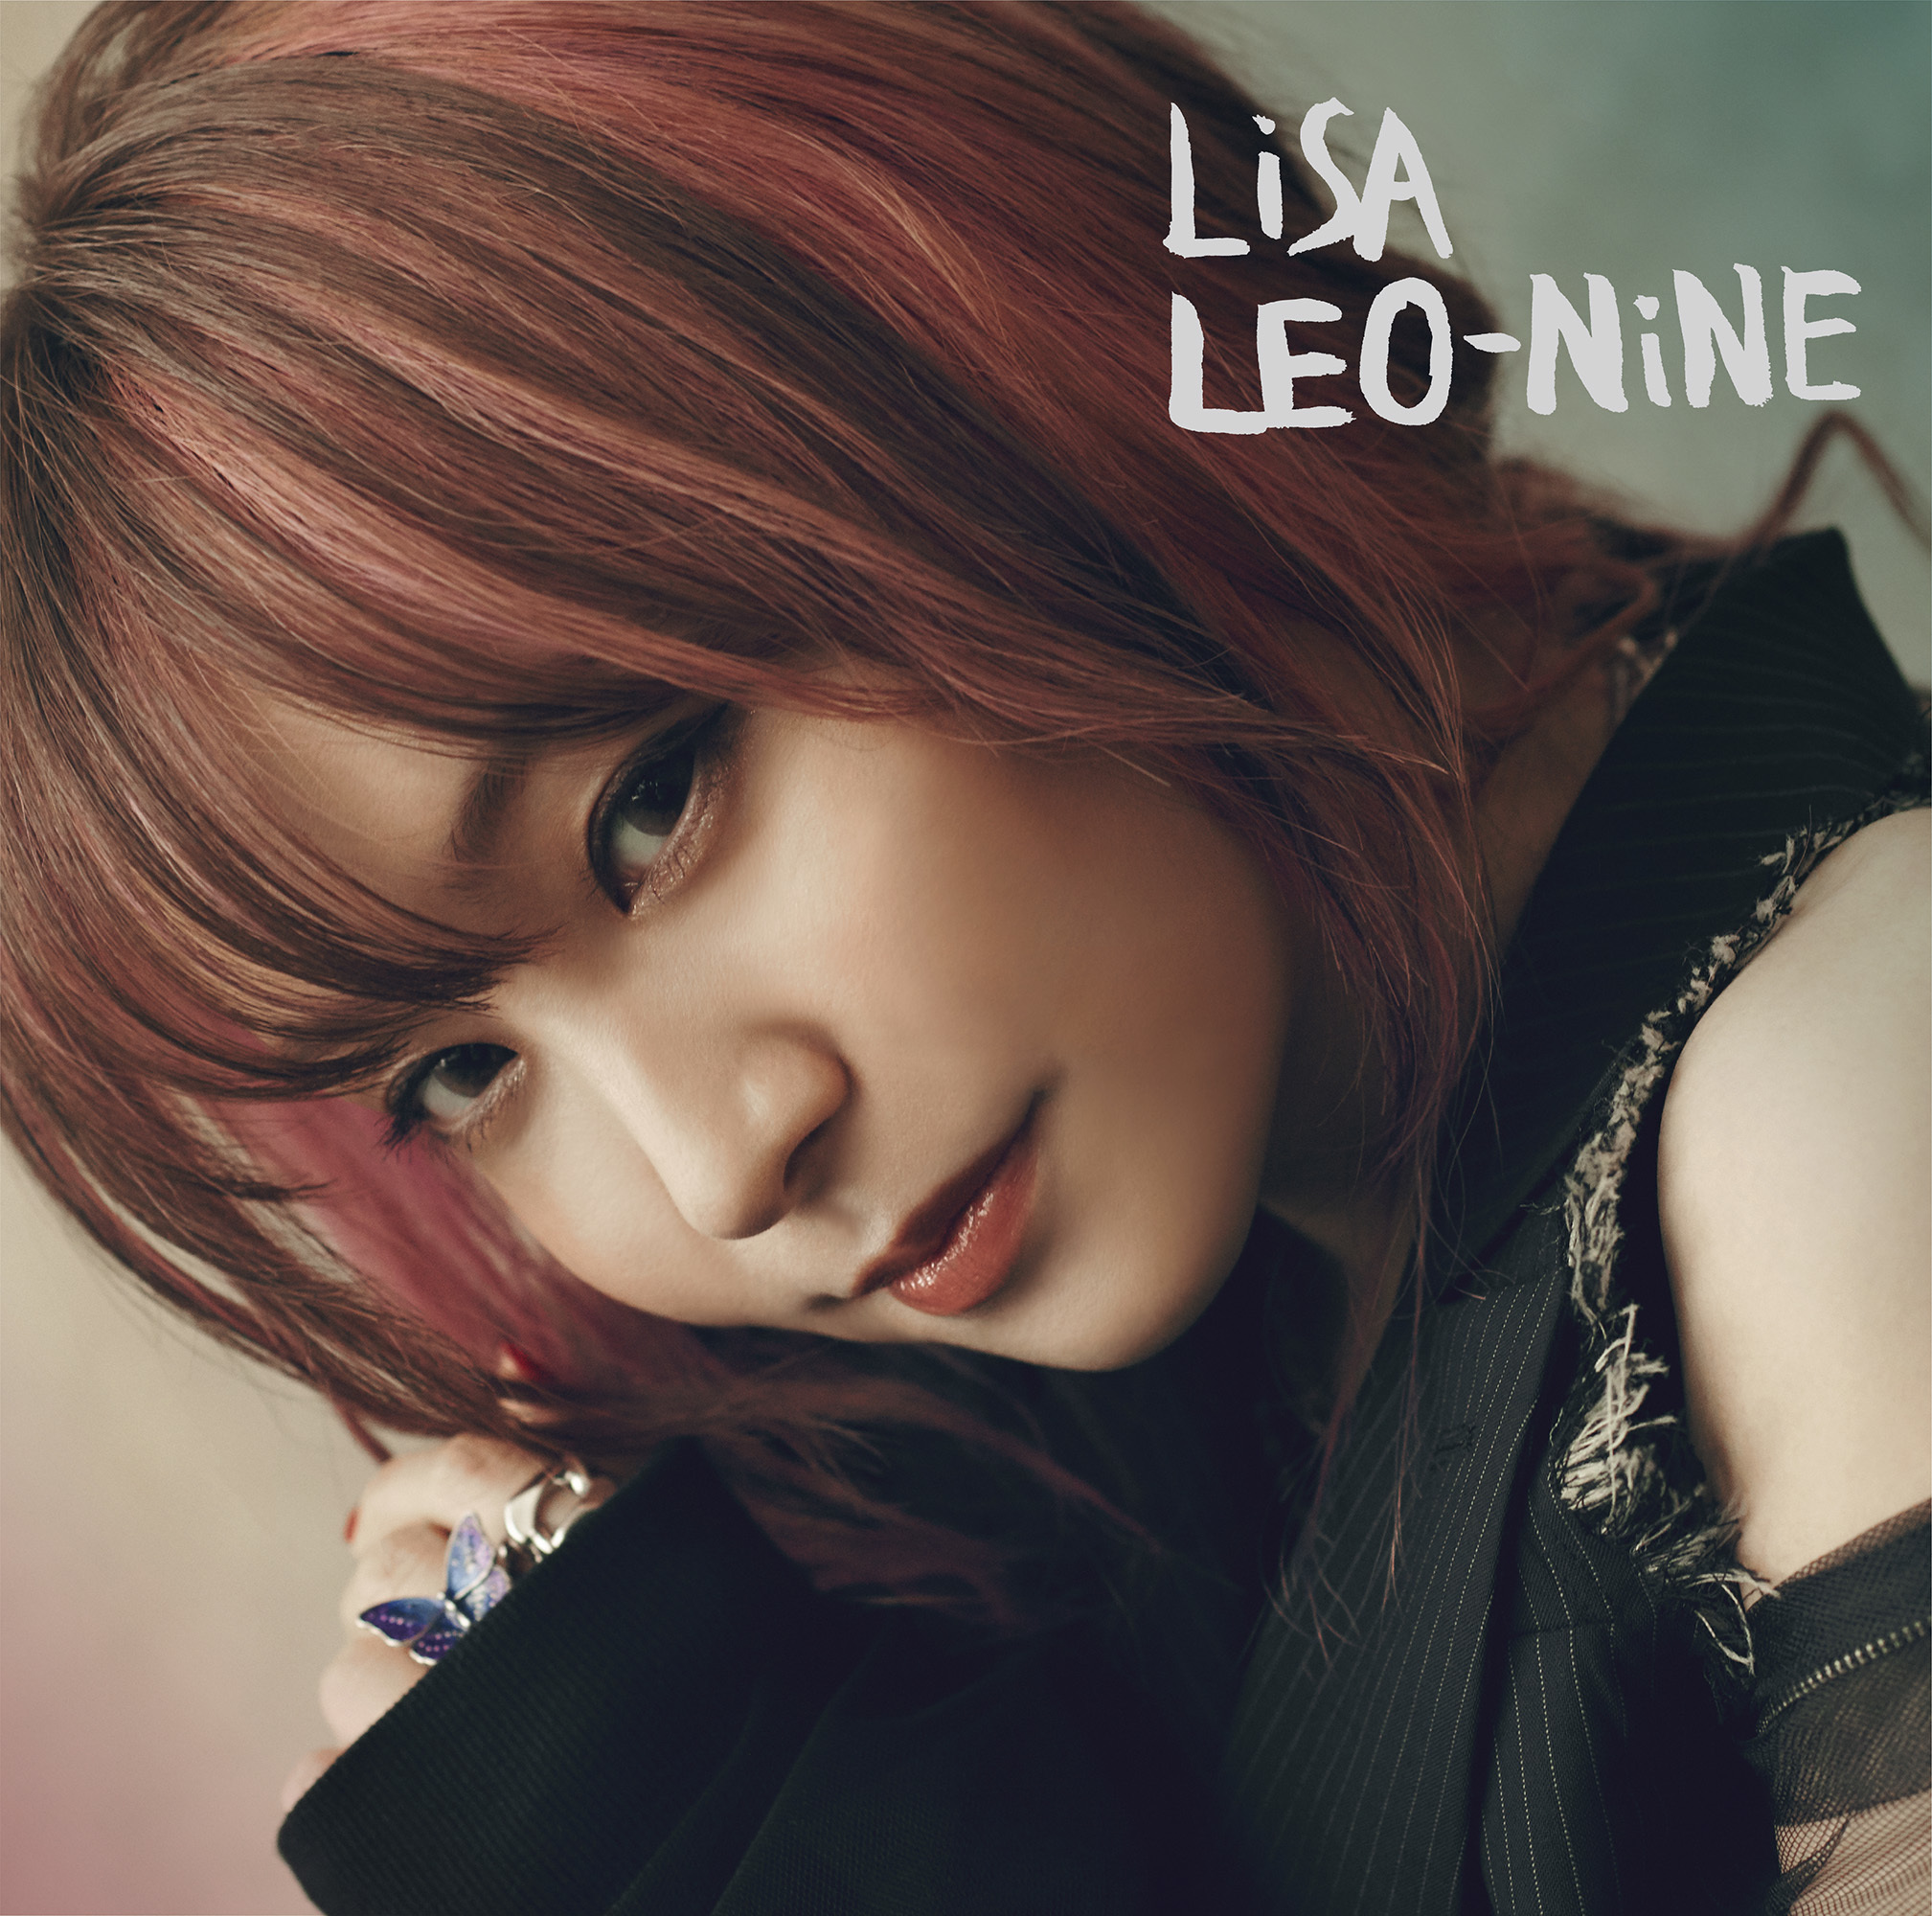 5thアルバム『LEO-NiNE』通常盤